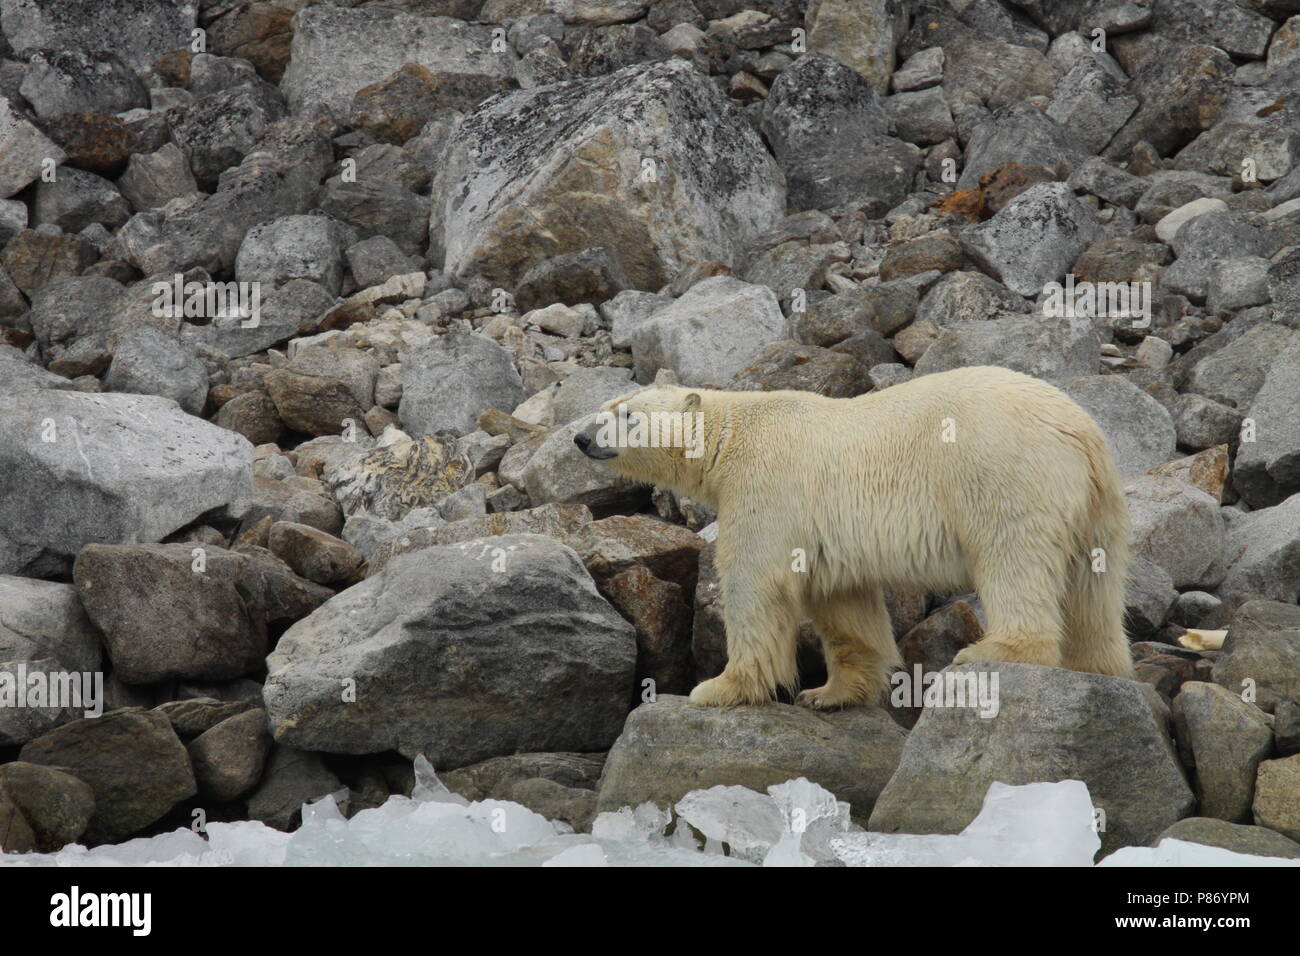 IJsbeer lopend op rotsen; Polar Bear walking on rocks Stock Photo